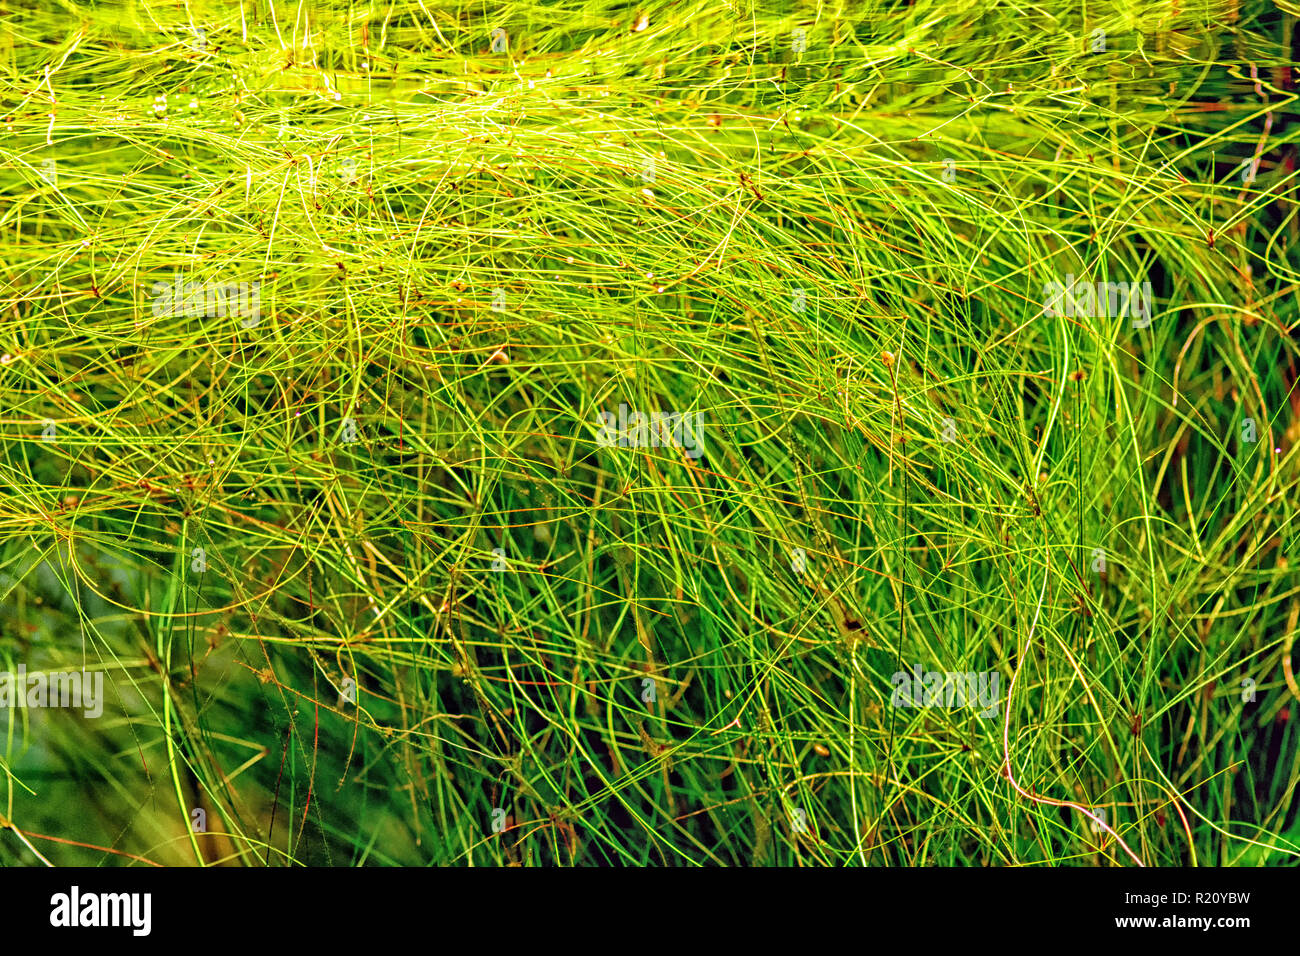 Aquarium plant Umbrella hairgrass (Eleocharis vivipara) shot in aquarium. Stock Photo